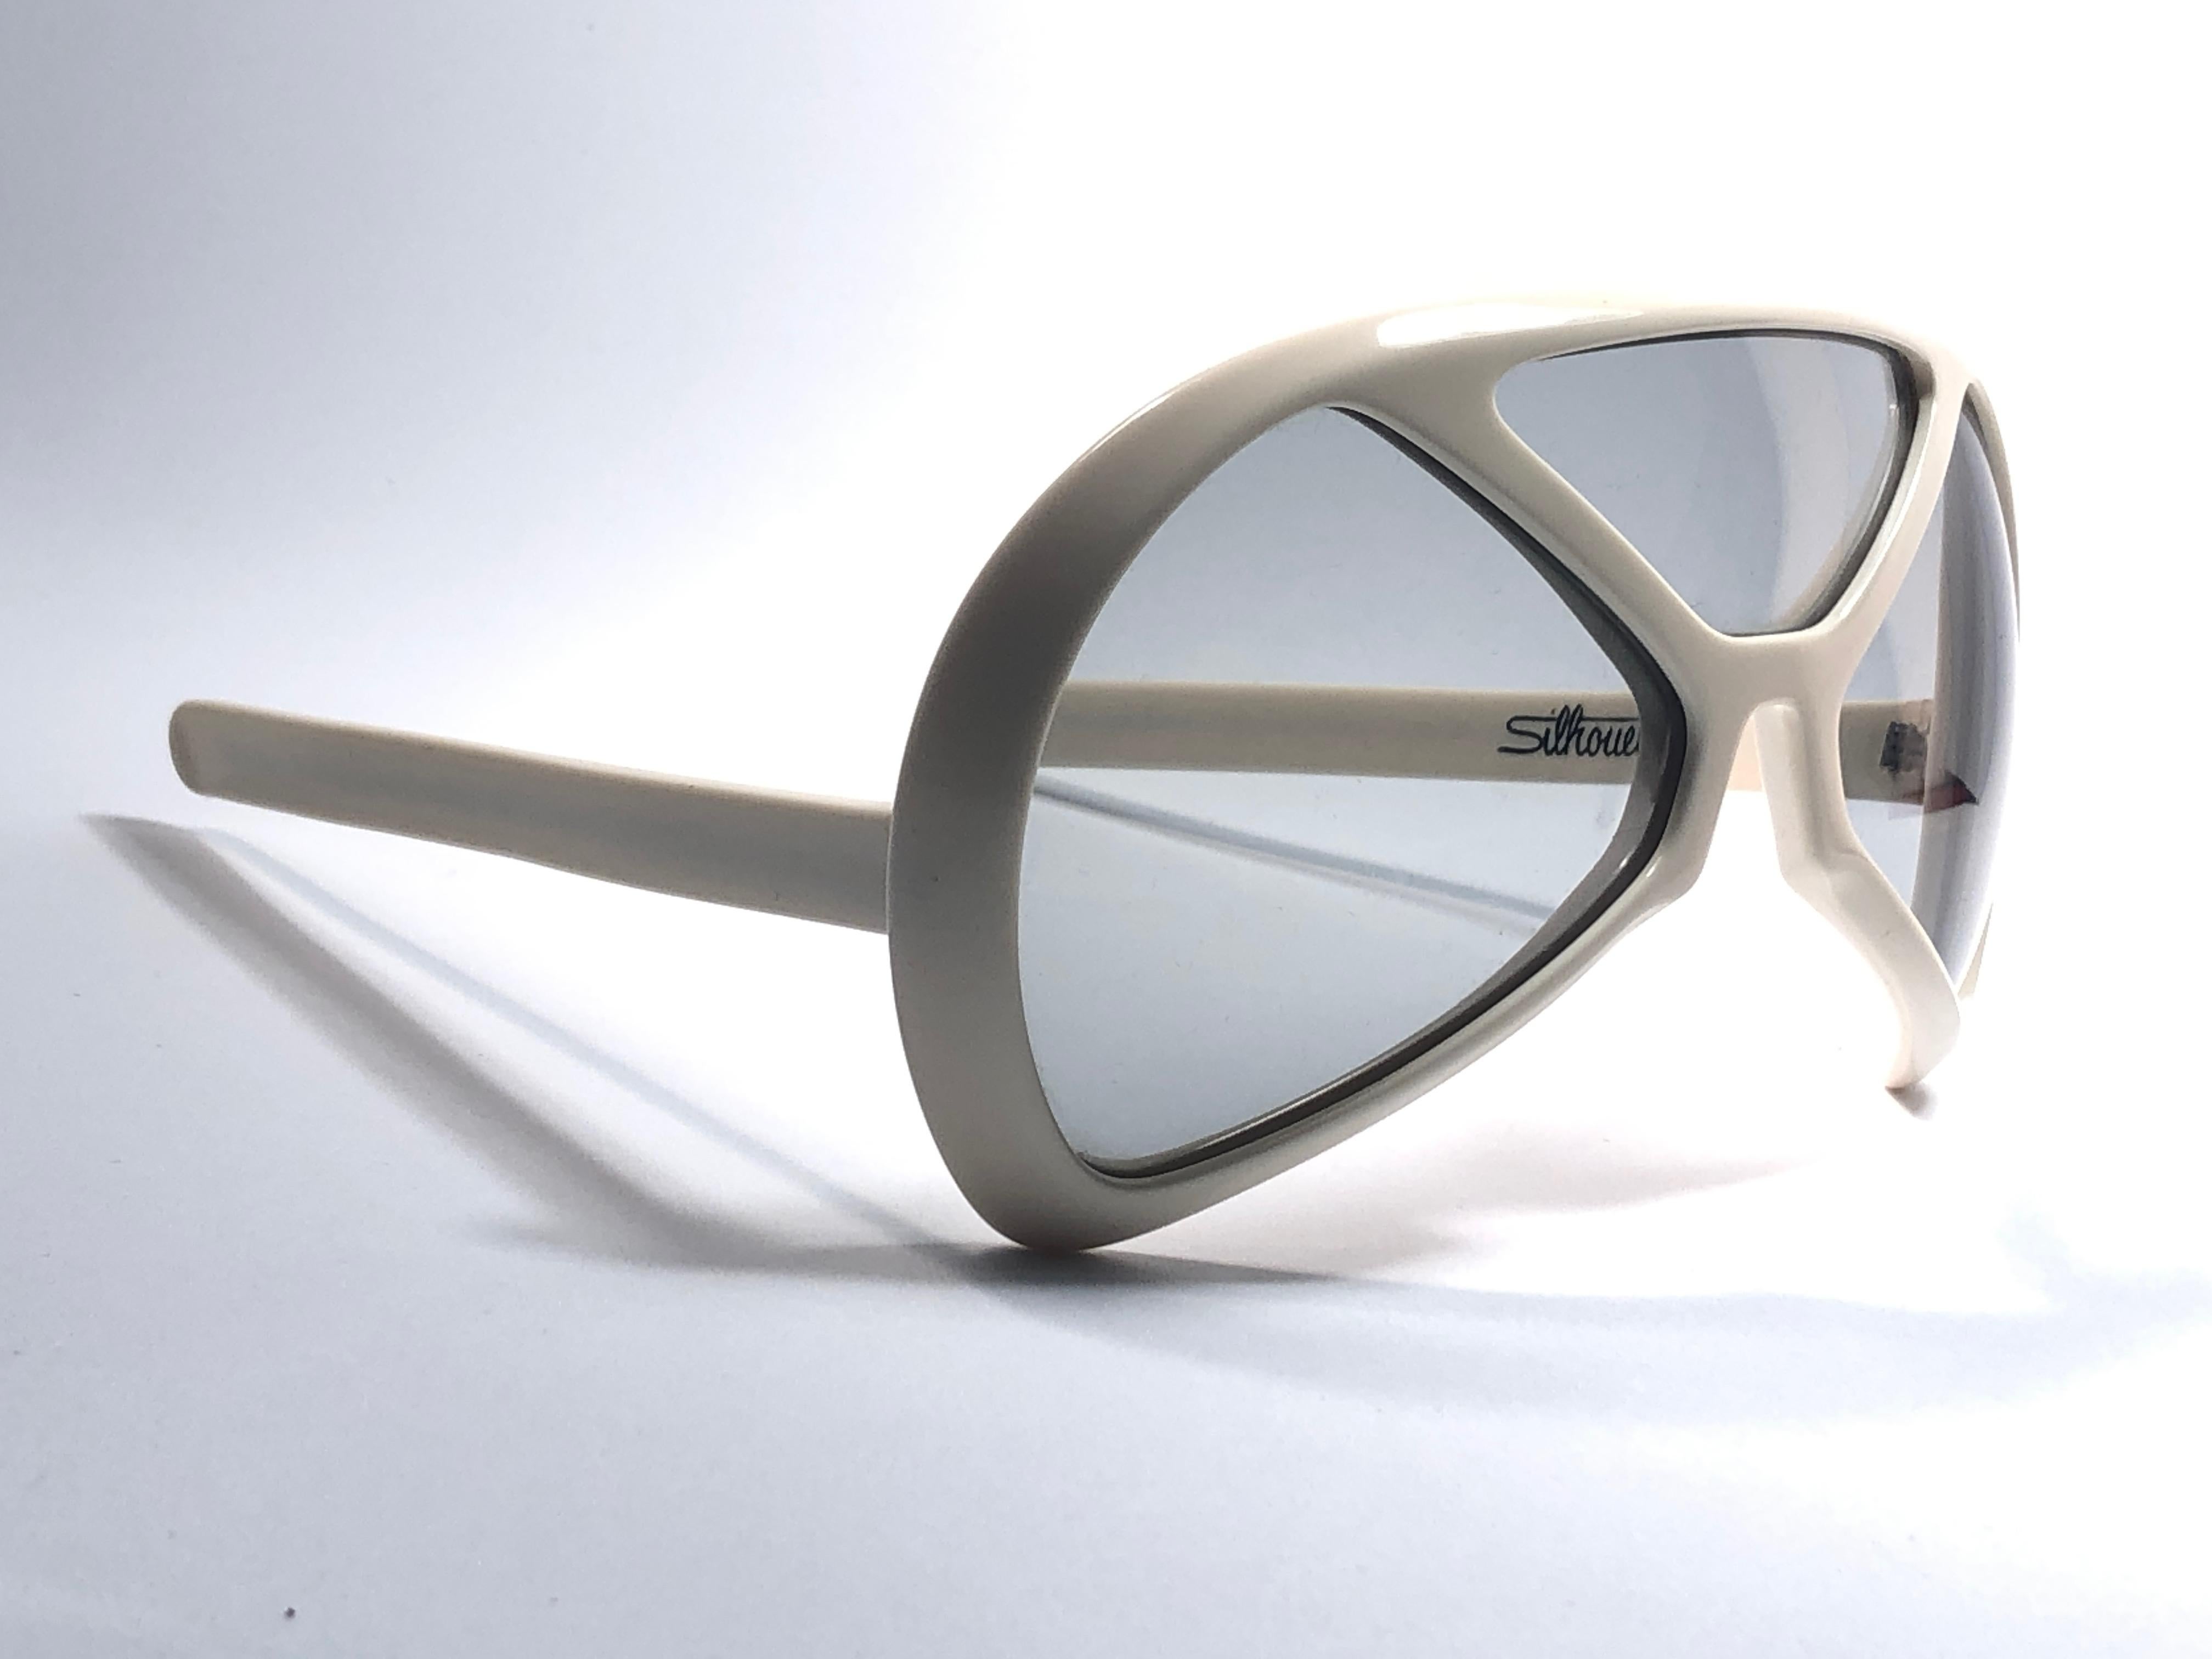 Nouvelle pièce de collection vintage Silhouette Futura 570 en blanc.

Conçue par Dora Demmel en 1973, cette pièce rare est la quintessence de la mode avant-gardiste et futuriste des lunettes.

Fabriqué en Allemagne dans les années 1970.

Cet article